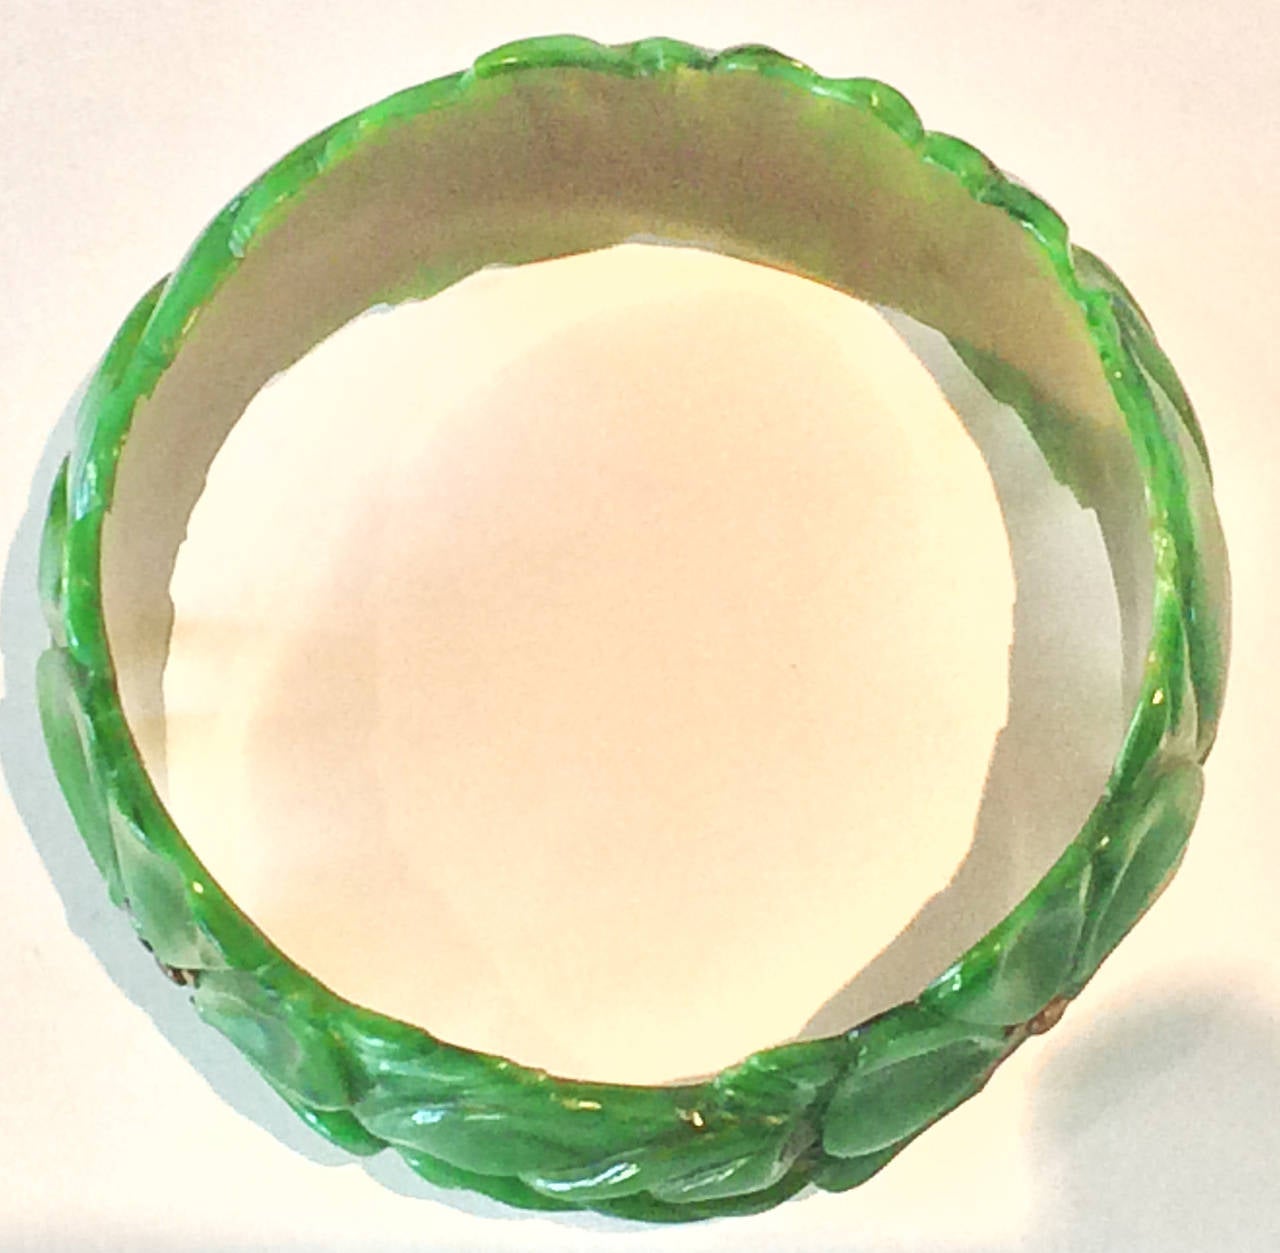 Women's Art Deco carved spinach green bakelite bangle bracelet